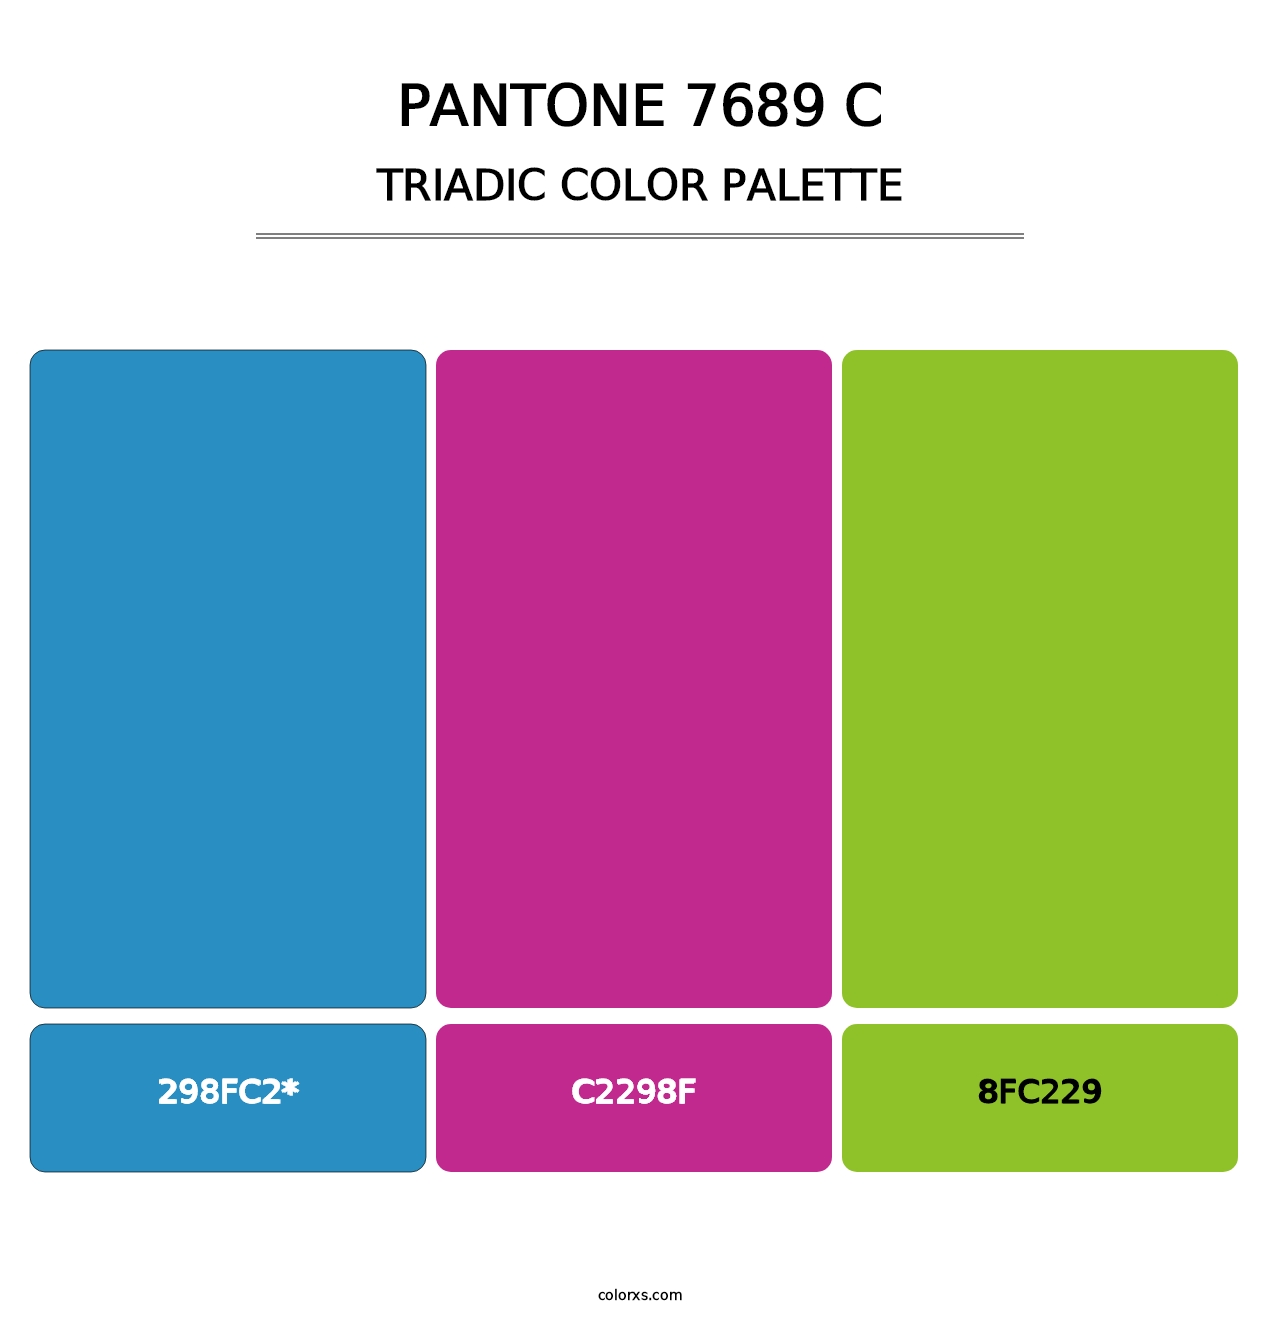 PANTONE 7689 C - Triadic Color Palette